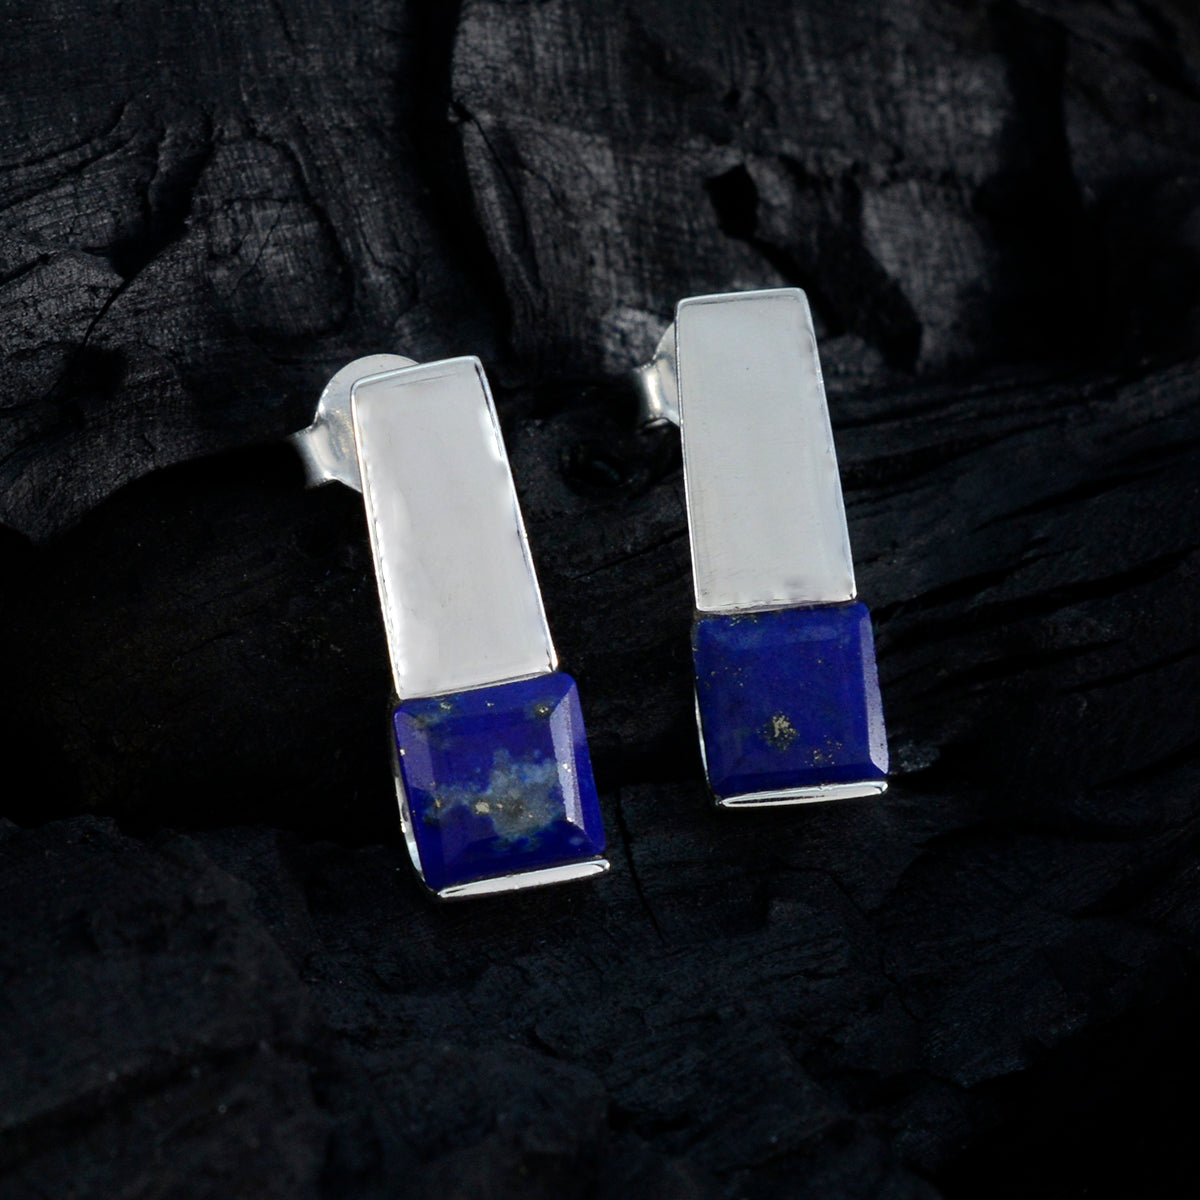 Riyo chaud 925 boucle d'oreille en argent sterling pour dame lapis lazuli boucle d'oreille réglage de la lunette boucle d'oreille bleue boucle d'oreille